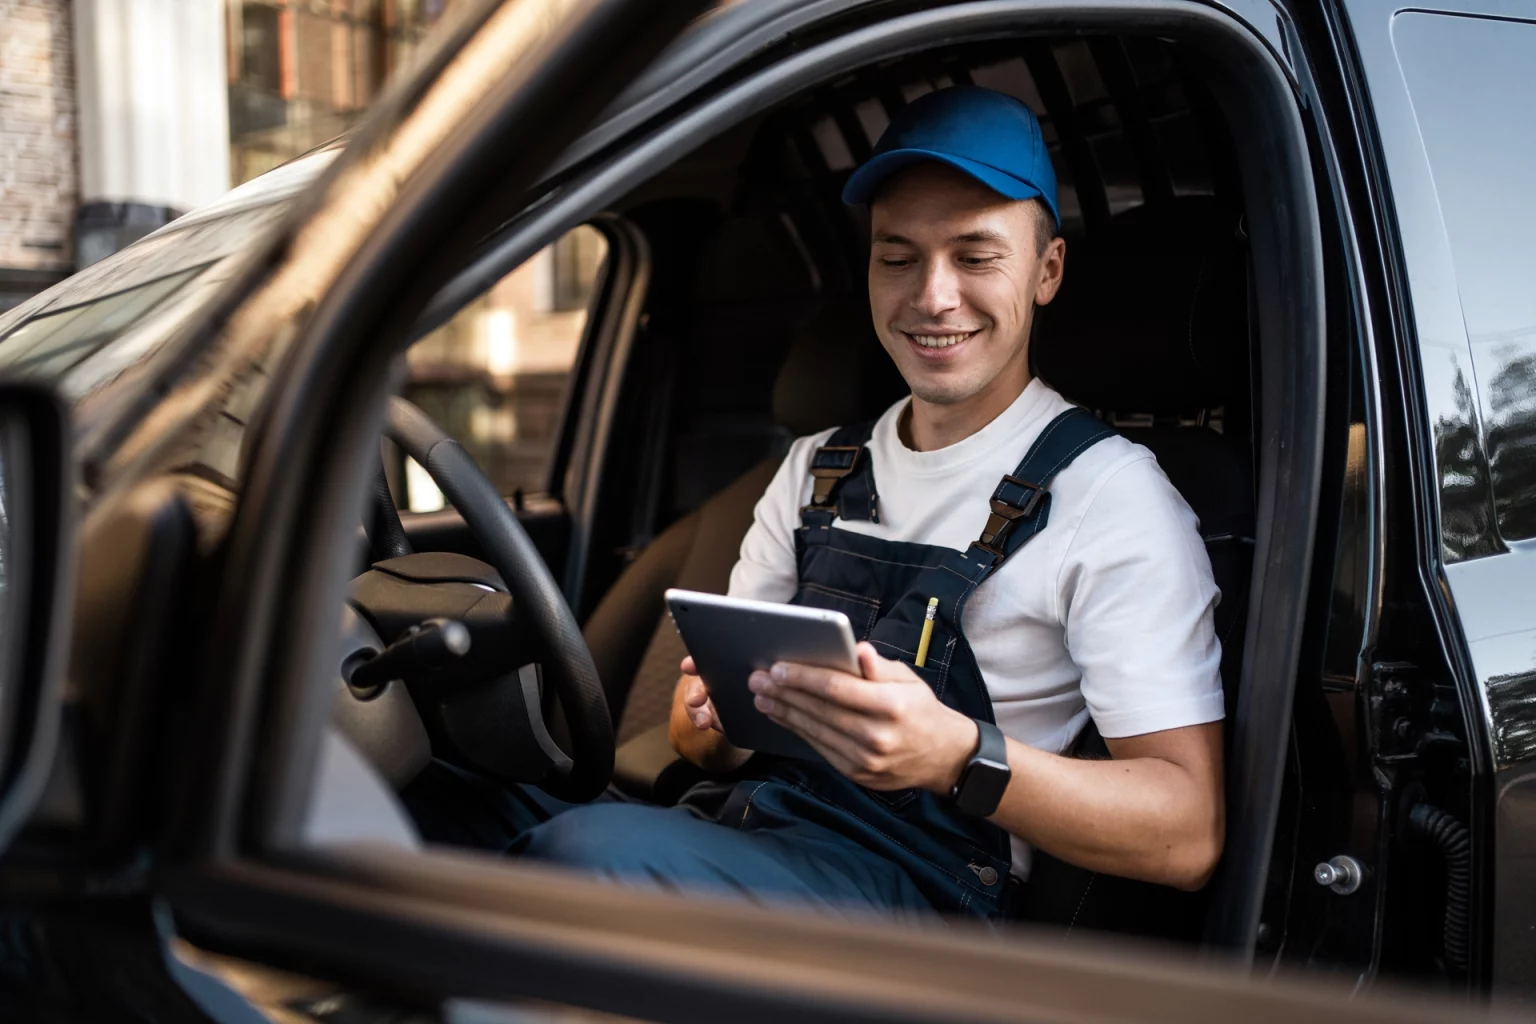 Un chauffeur-livreur souriant en uniforme, tenant une tablette électronique pour organiser ses livraisons, assis dans la cabine de son véhicule.